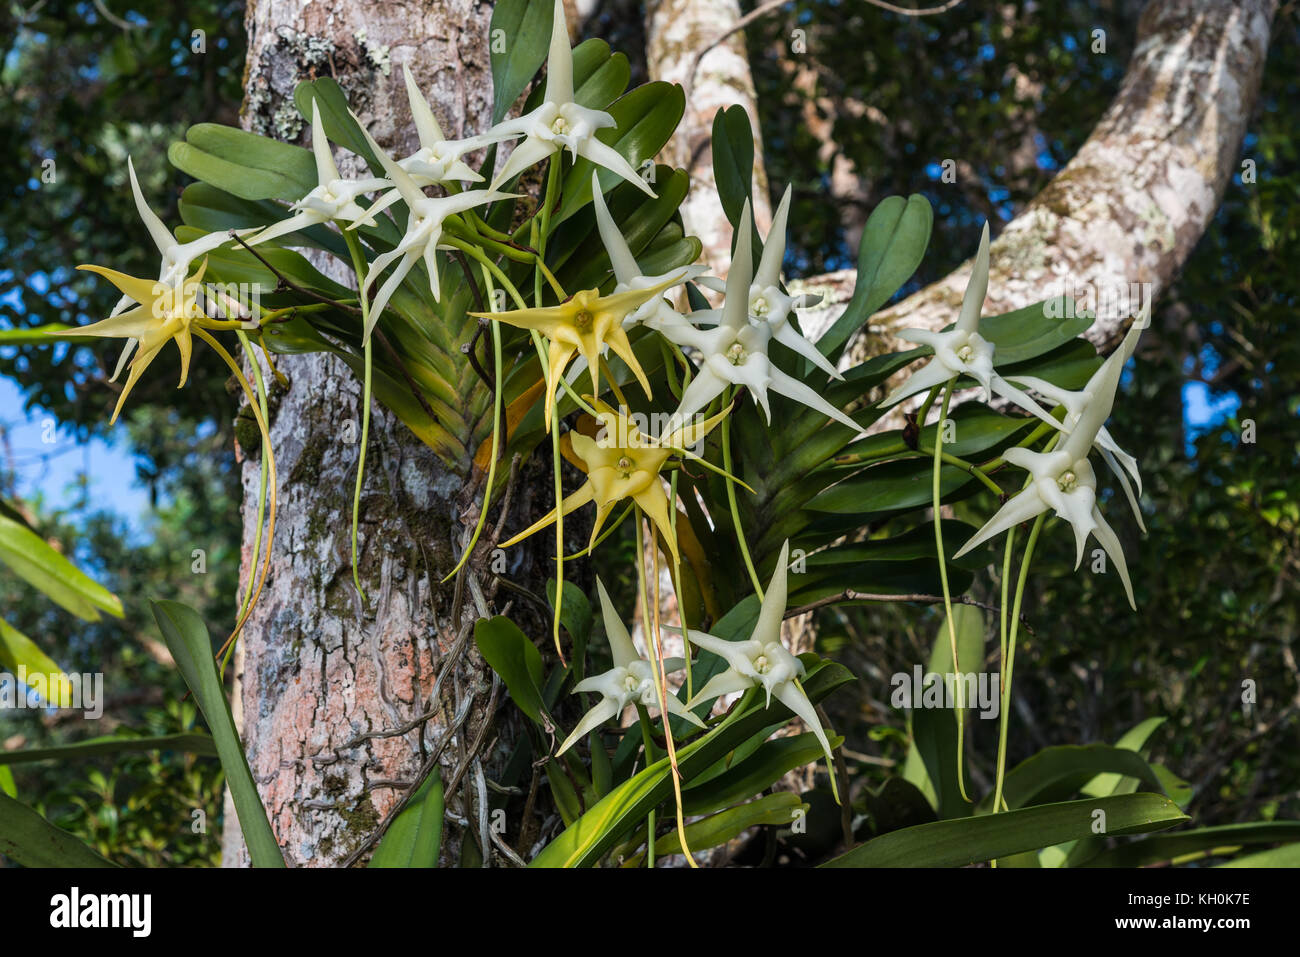 Darwins Orchidee (Angraecum sesquipedale) steht in voller Blüte in ihrem heimischen Lebensraum. Madagaskar, Afrika. Stockfoto